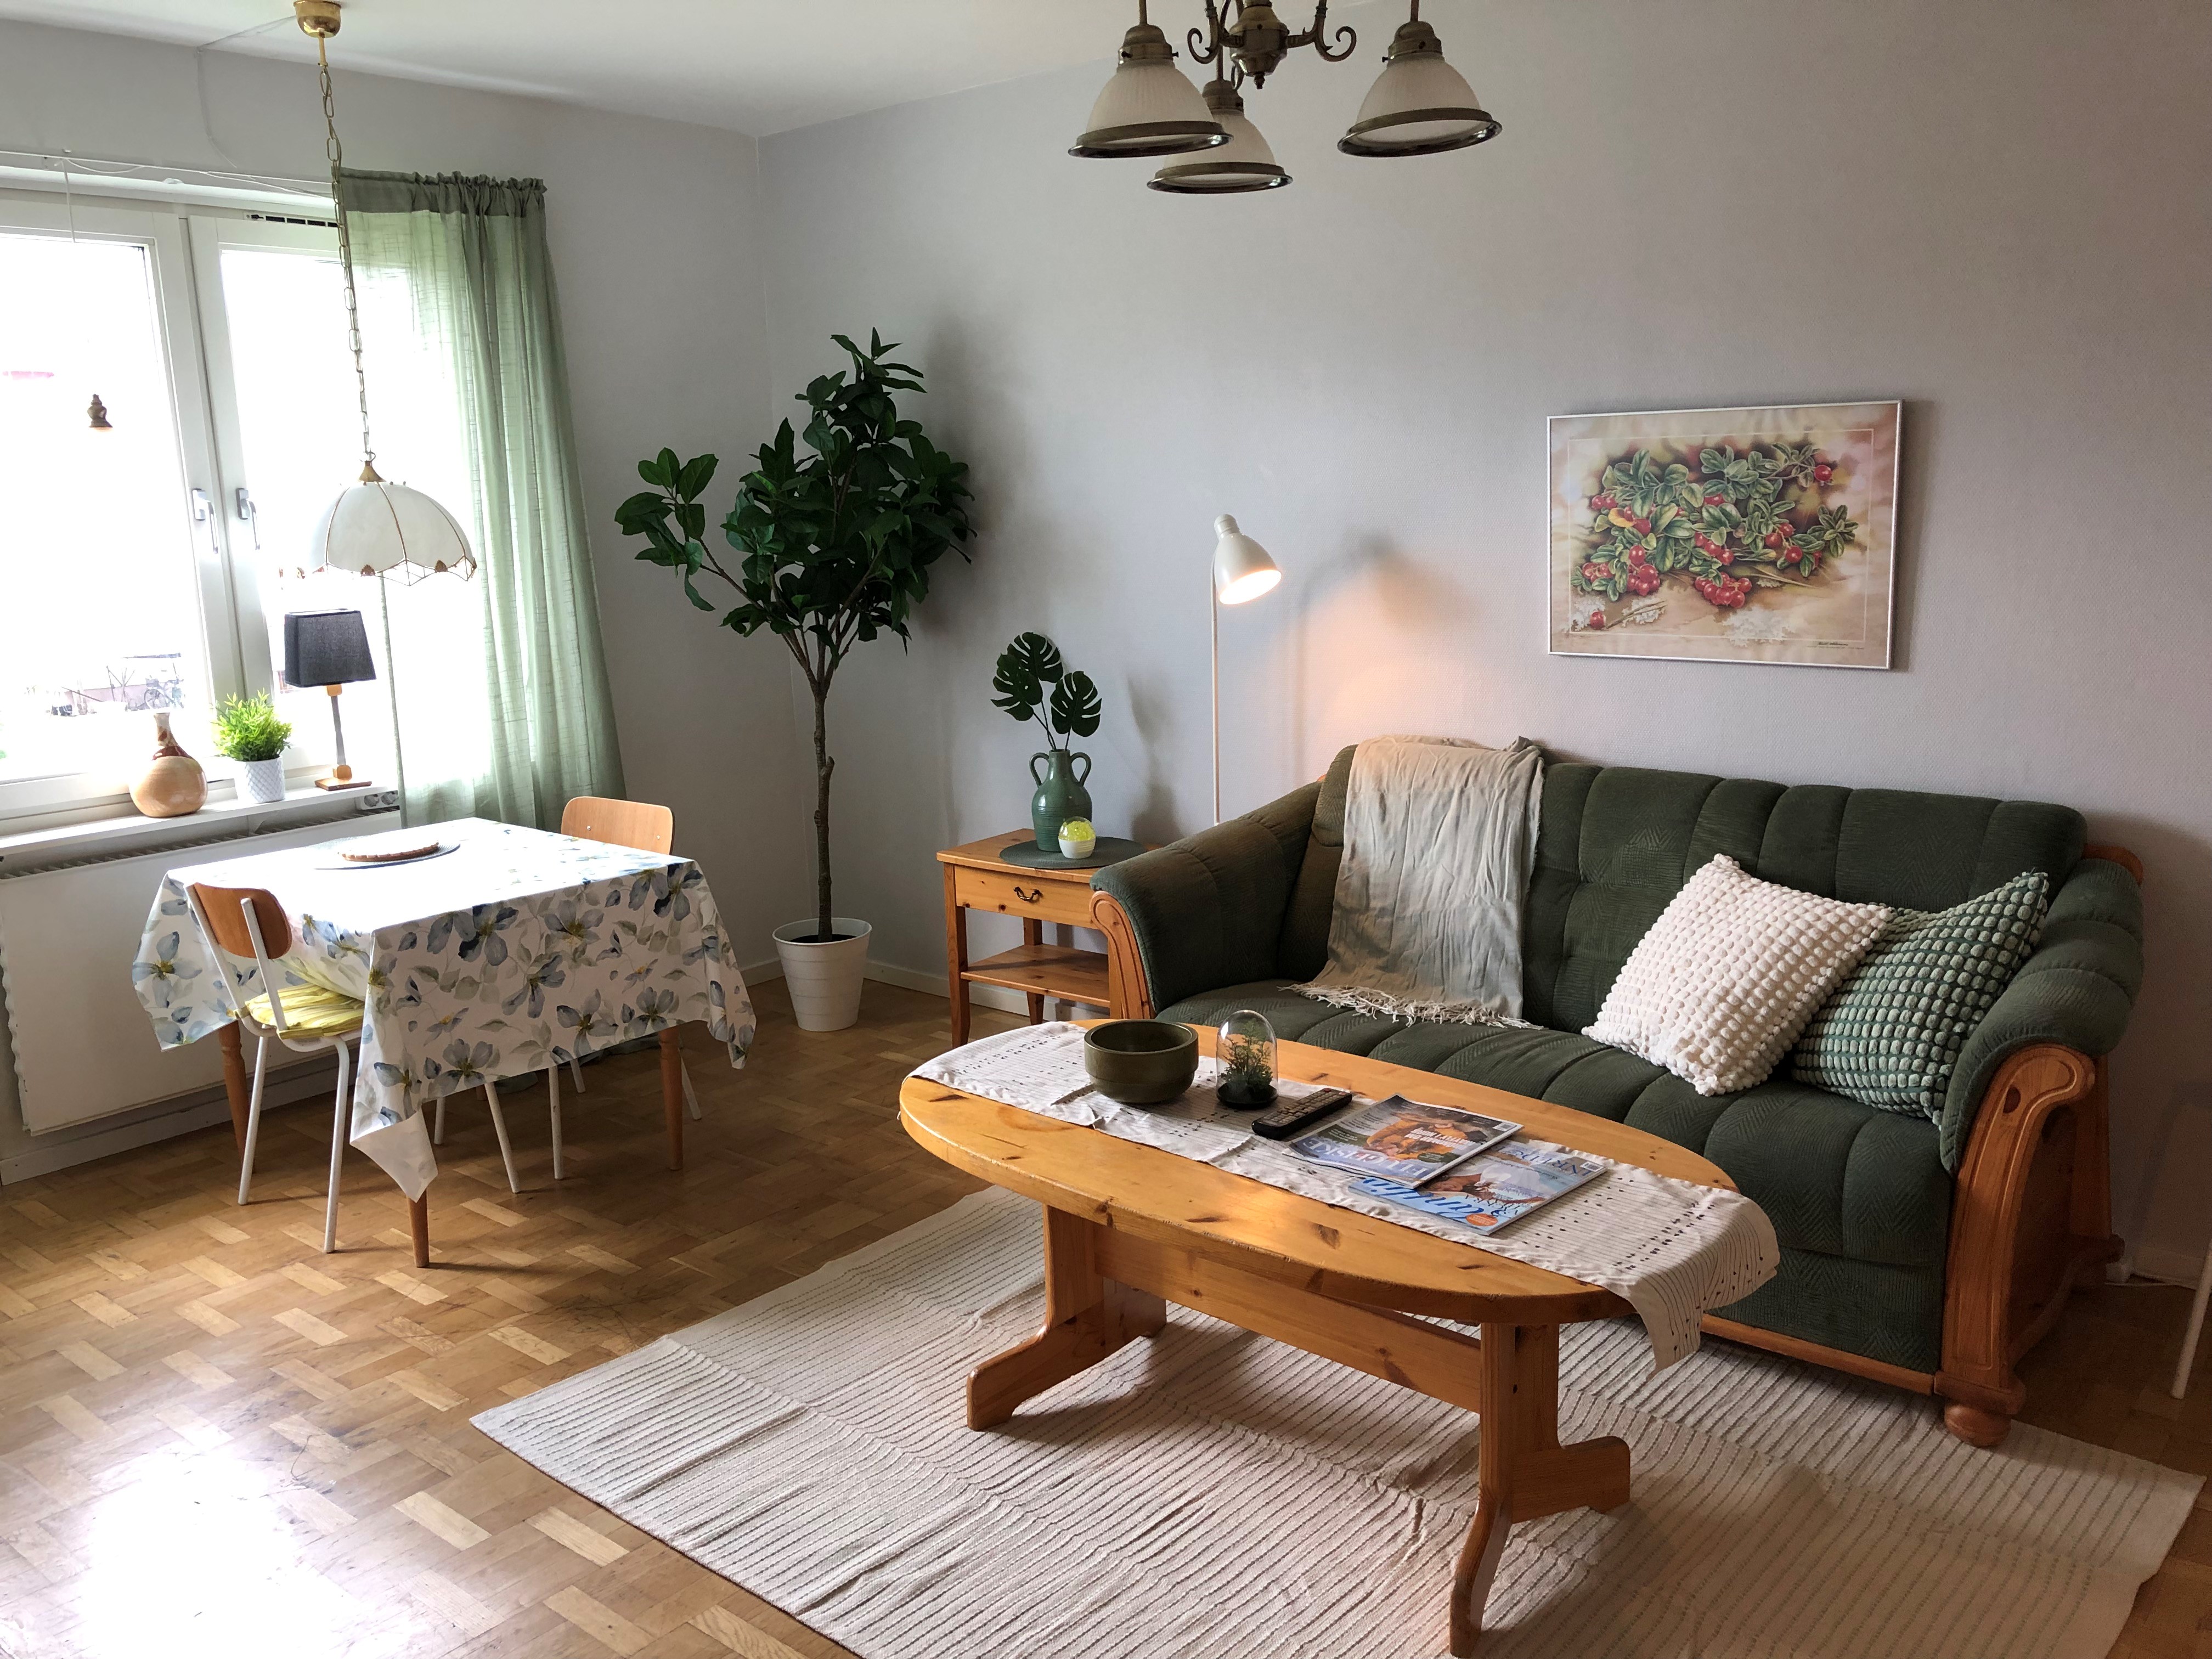 Lägenhet med soffa, soffbord och köksbord